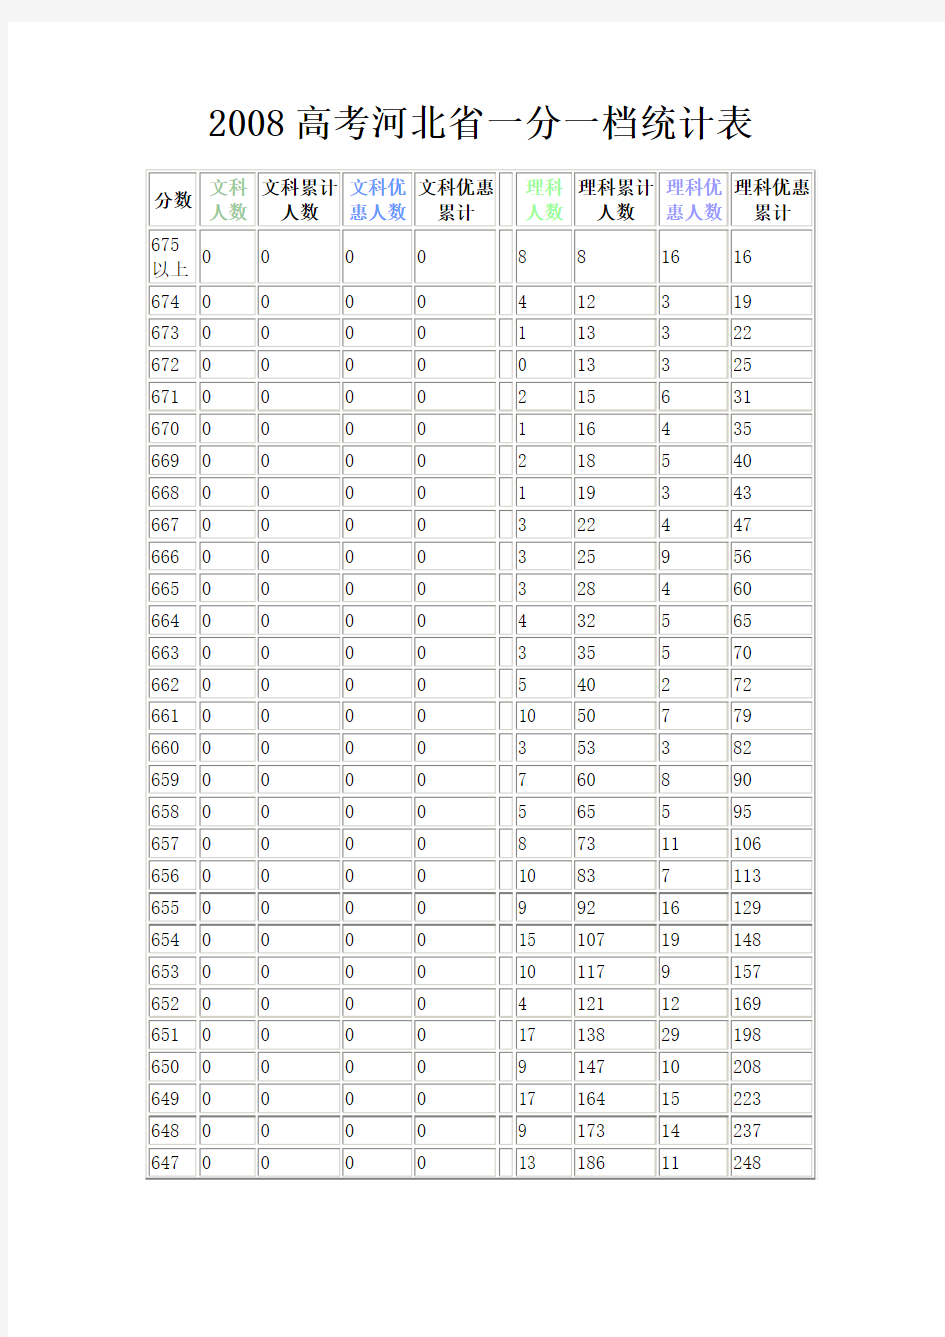 2008高考河北省一分一档统计表